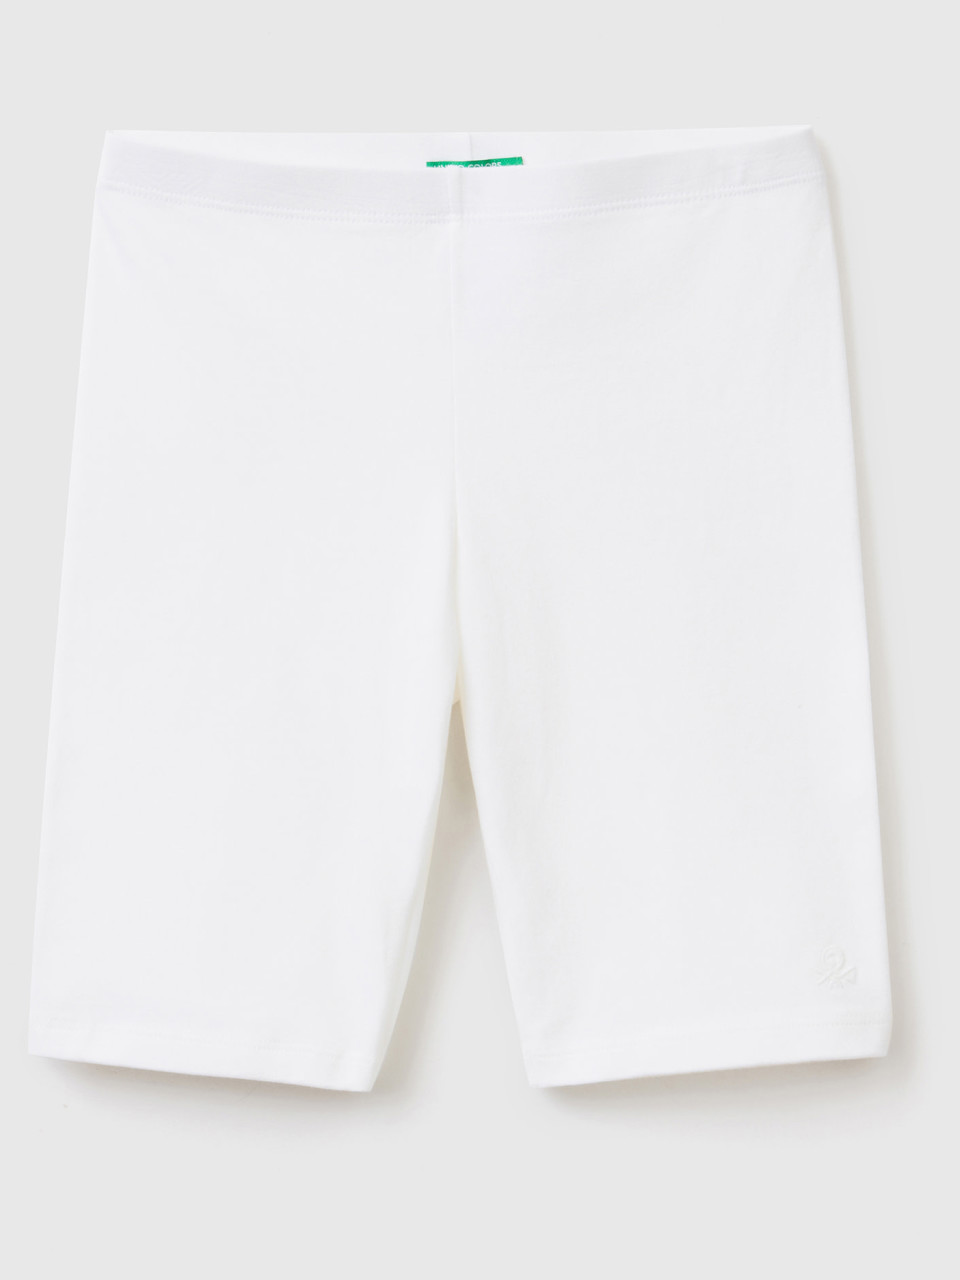 Benetton, Short Leggings In Stretch Cotton, White, Kids